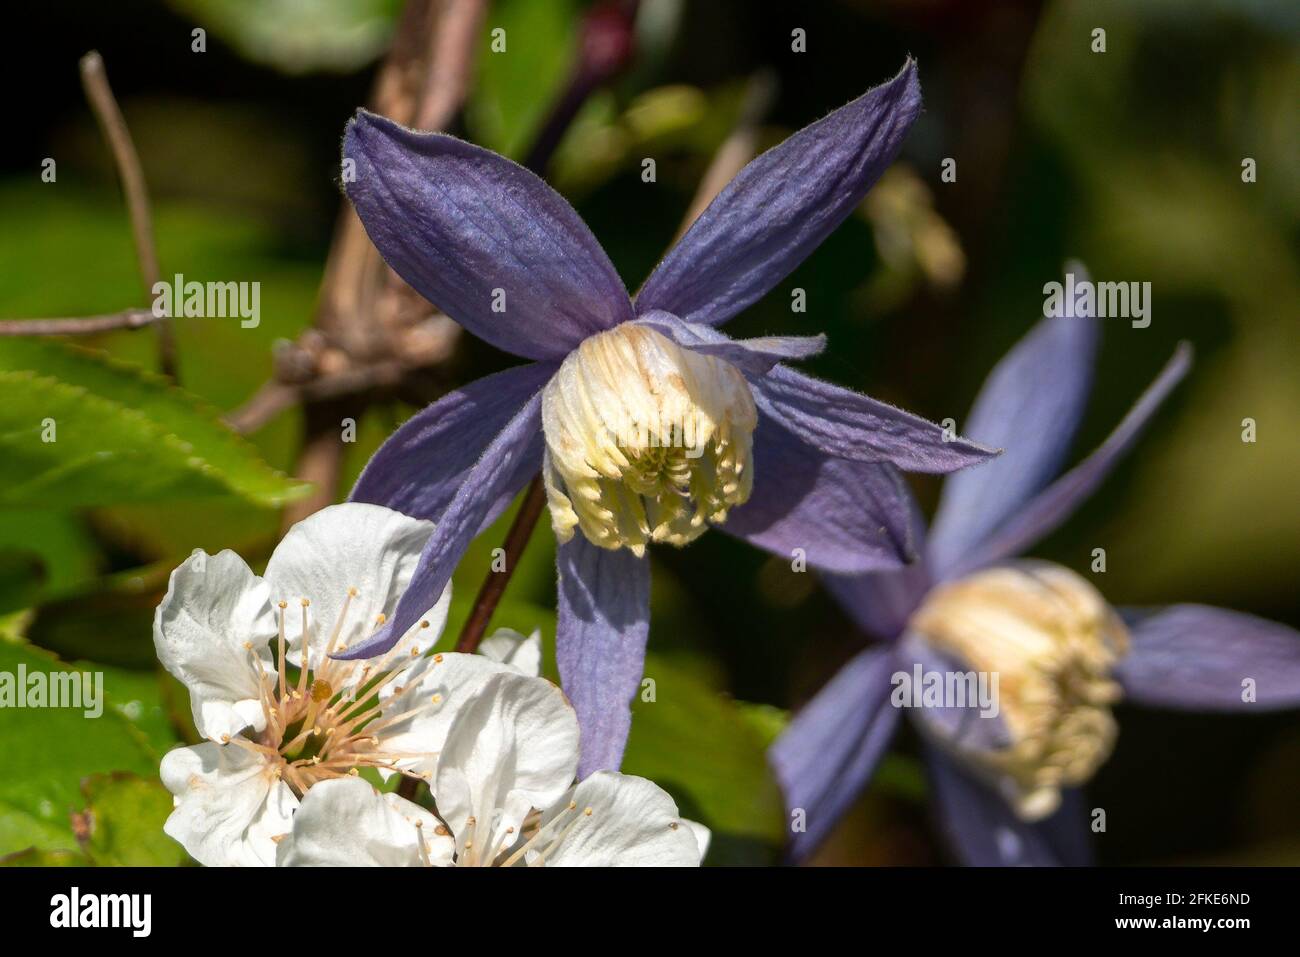 Clematis alpina plante arbustive à fleur de printemps avec une fleur de printemps bleu violet qui ouvre d'avril à mai, photo de stock Banque D'Images